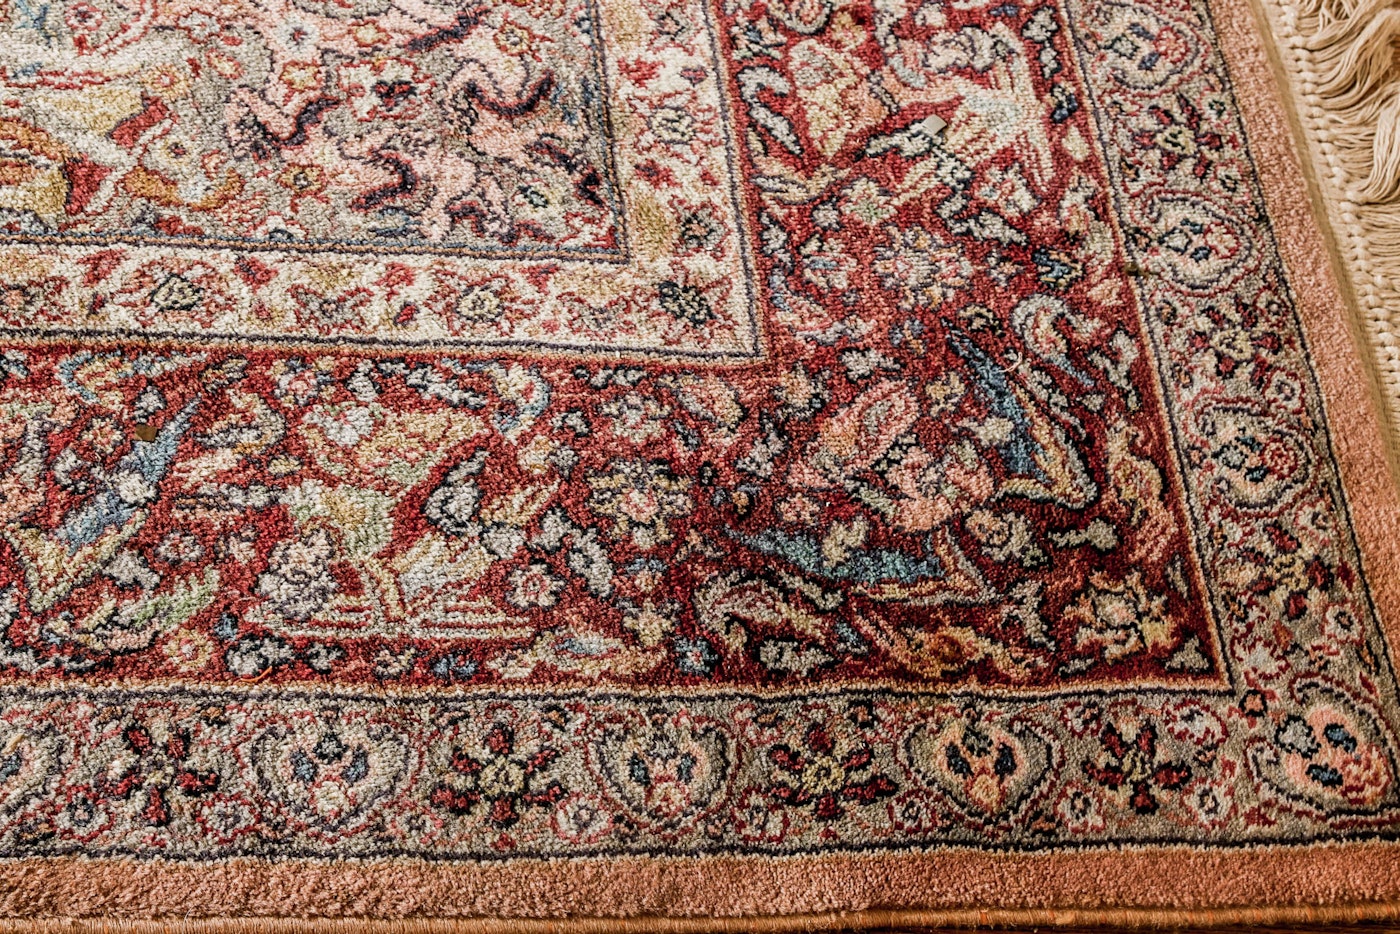 Power-Loomed Karastan Wool "Persian Hunting Rug" | EBTH